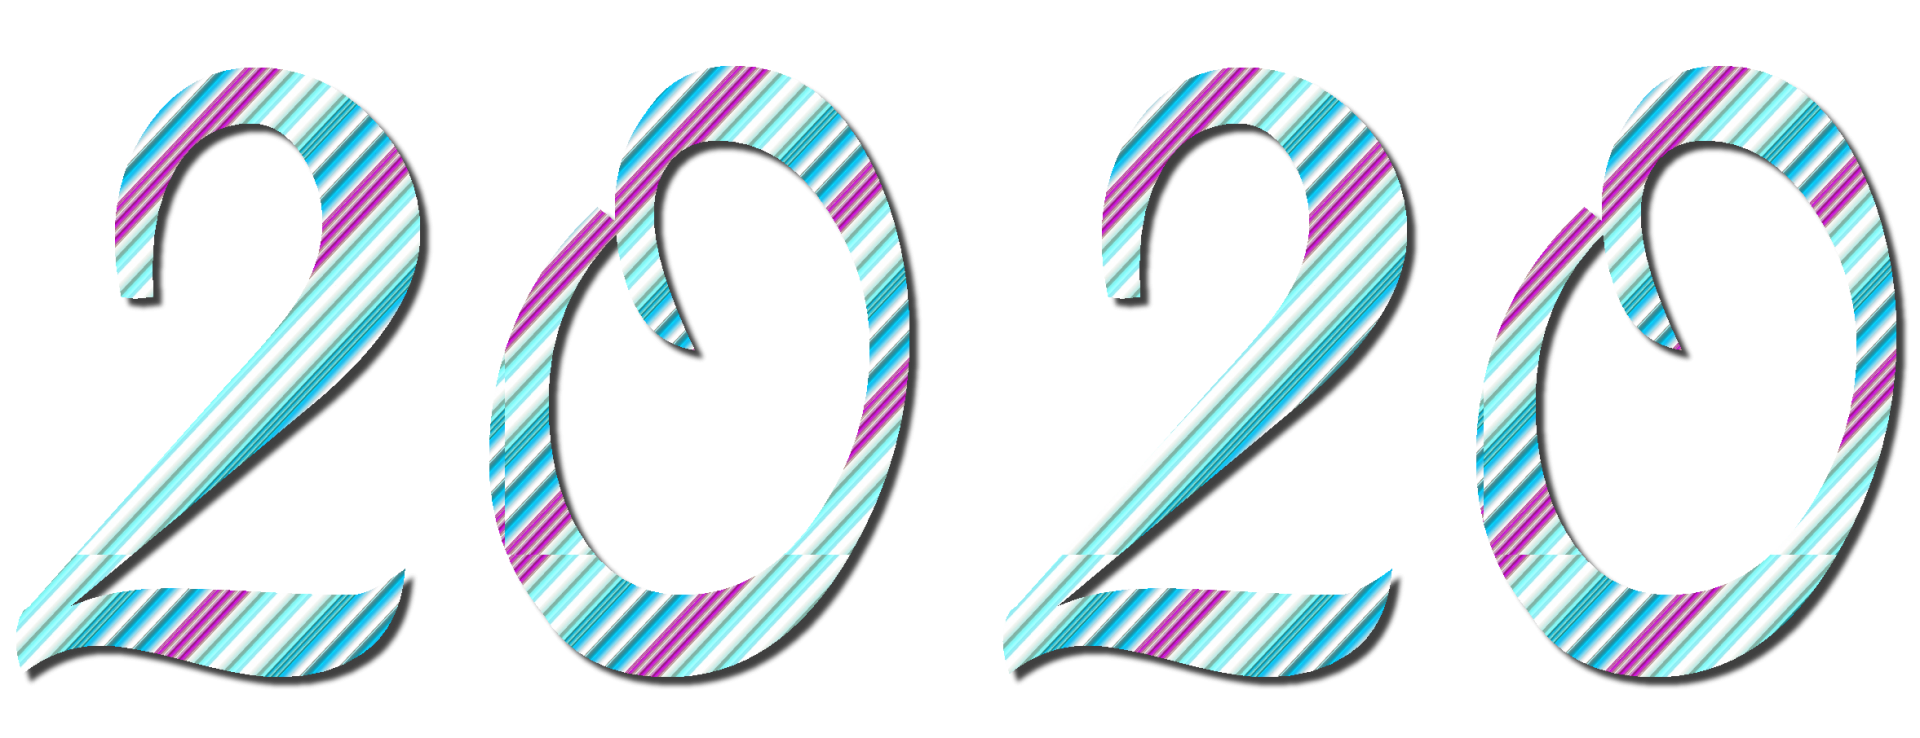 2020 - 8